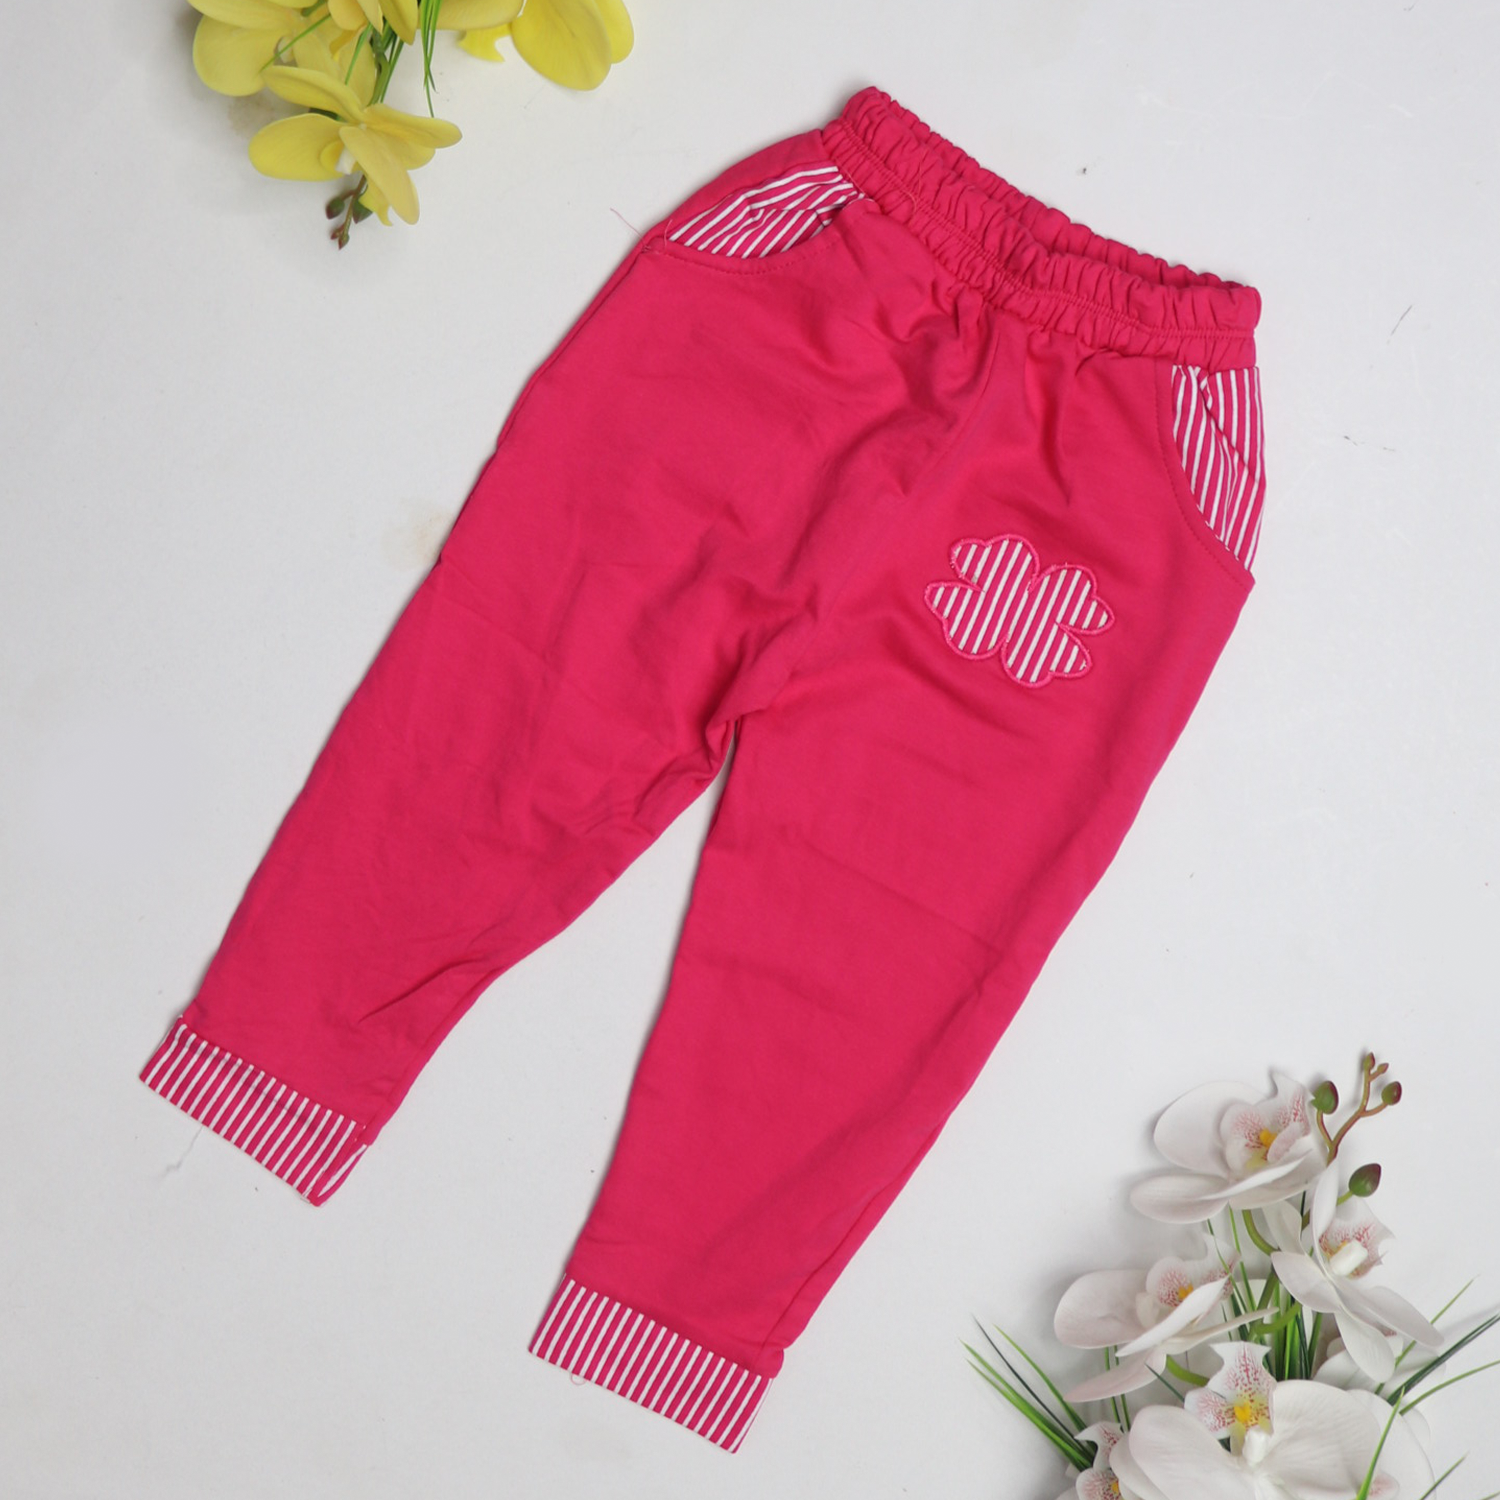 Soft Flower Design Trouser for Girls